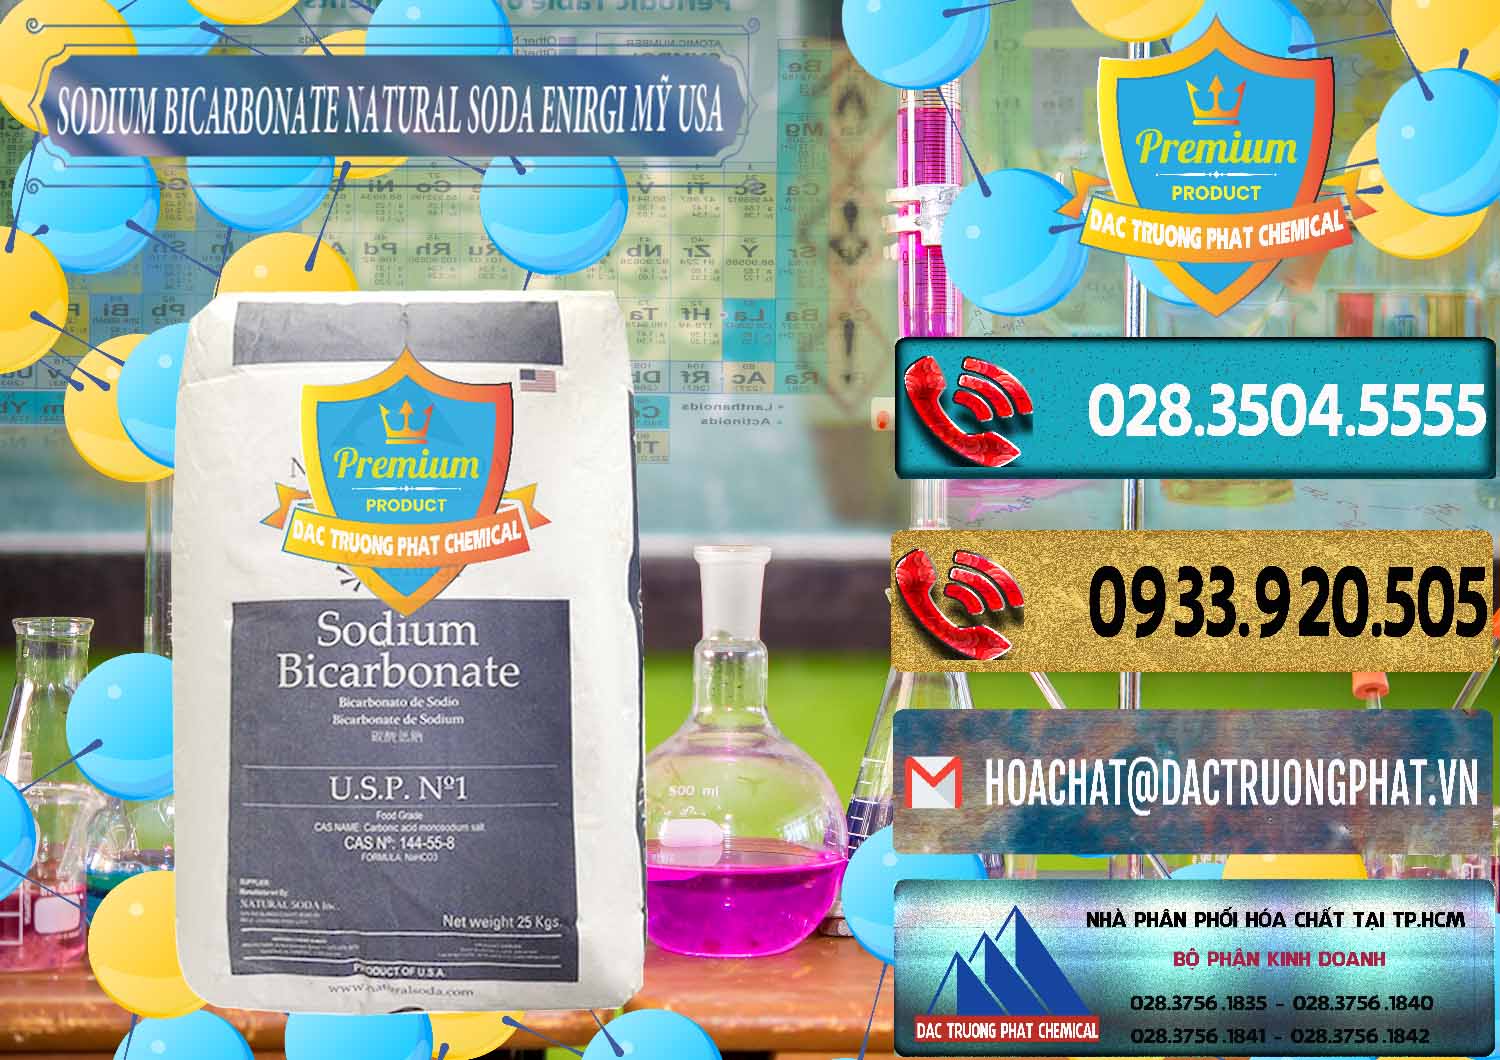 Nơi bán Sodium Bicarbonate – Bicar NaHCO3 Food Grade Natural Soda Enirgi Mỹ USA - 0257 - Đơn vị cung cấp - phân phối hóa chất tại TP.HCM - hoachatdetnhuom.com